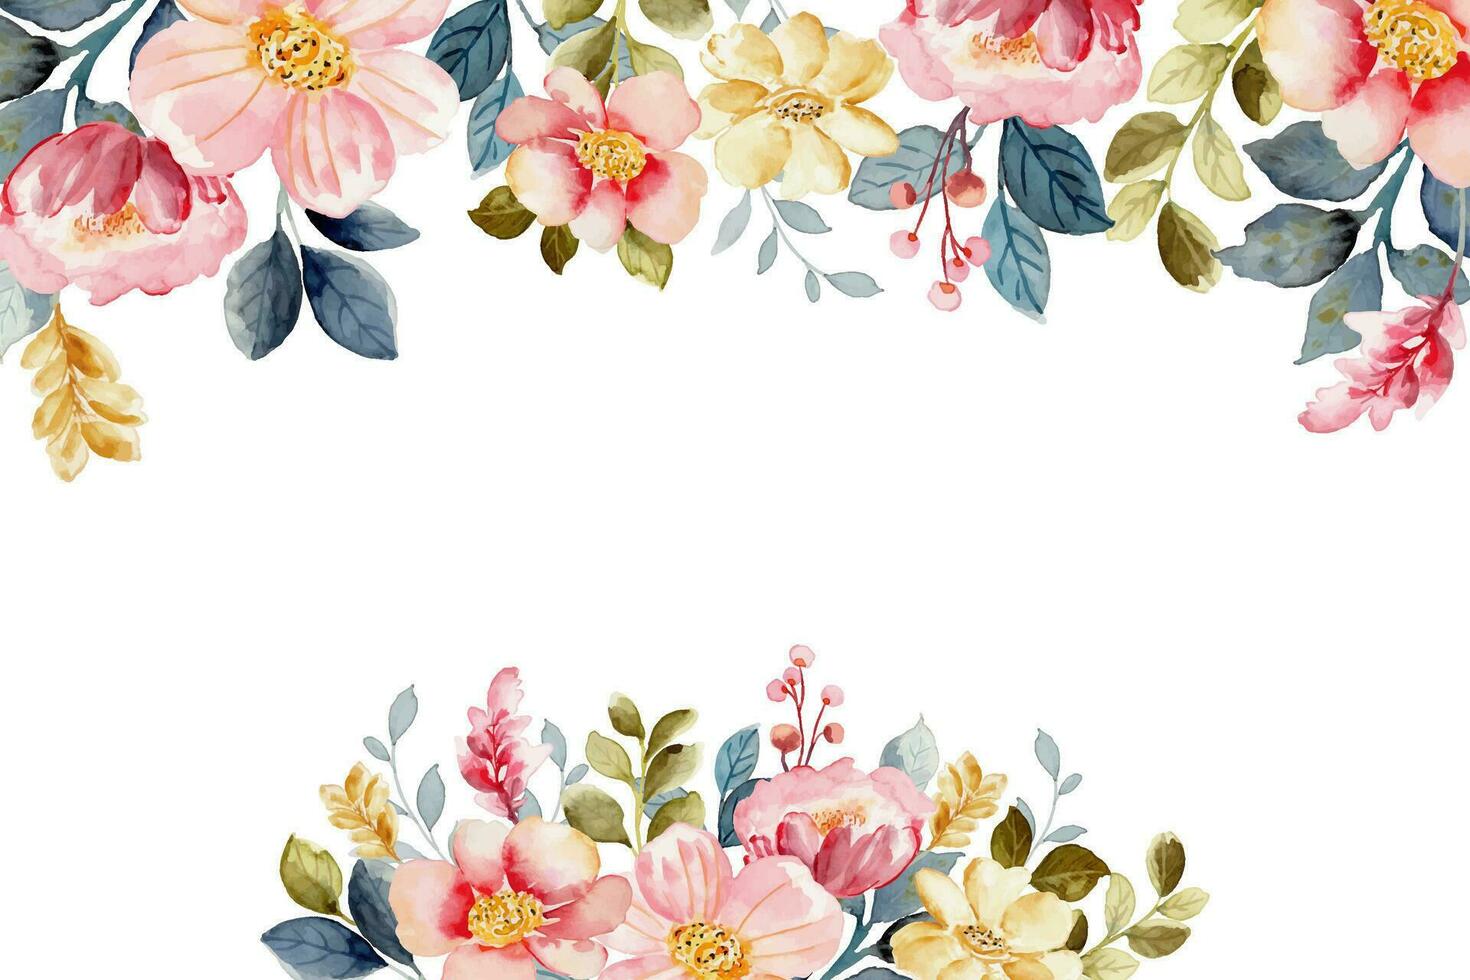 Rosa floral fronteira com aguarela para casamento, aniversário, cartão, fundo, convite, papel de parede, adesivo, decoração etc. vetor